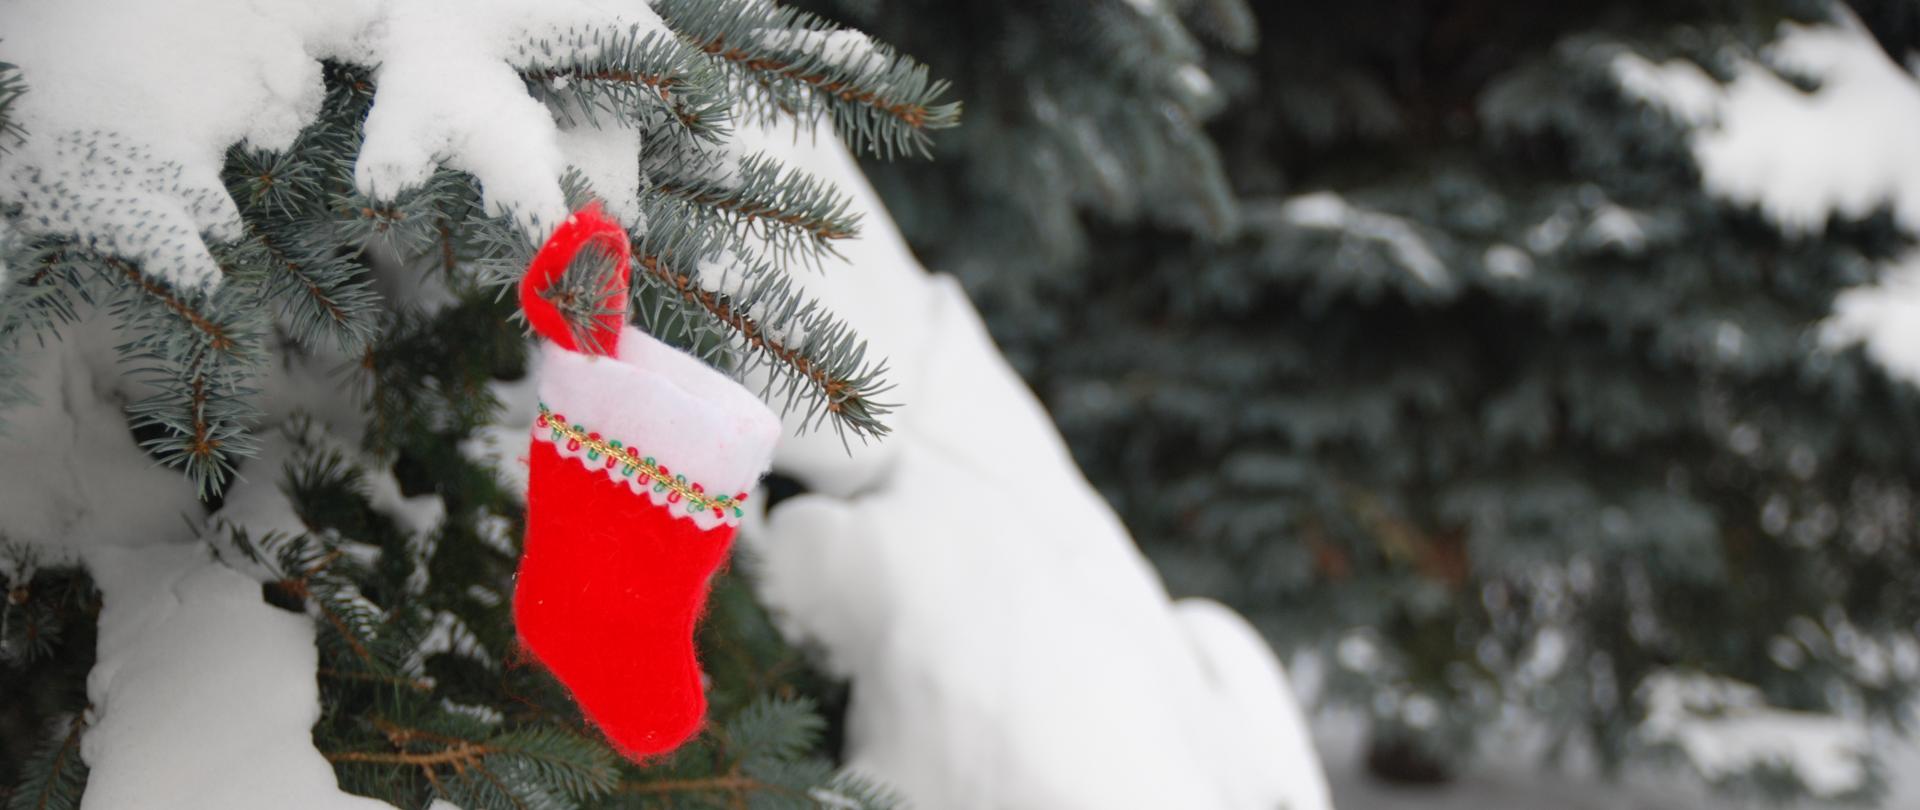 zdjęcie przedstawia czerwoną skarpetę na prezenty zawieszoną na gałęzi ośnieżonej choinki. Kolorystyka tła zdjęcia zielono-biała.
